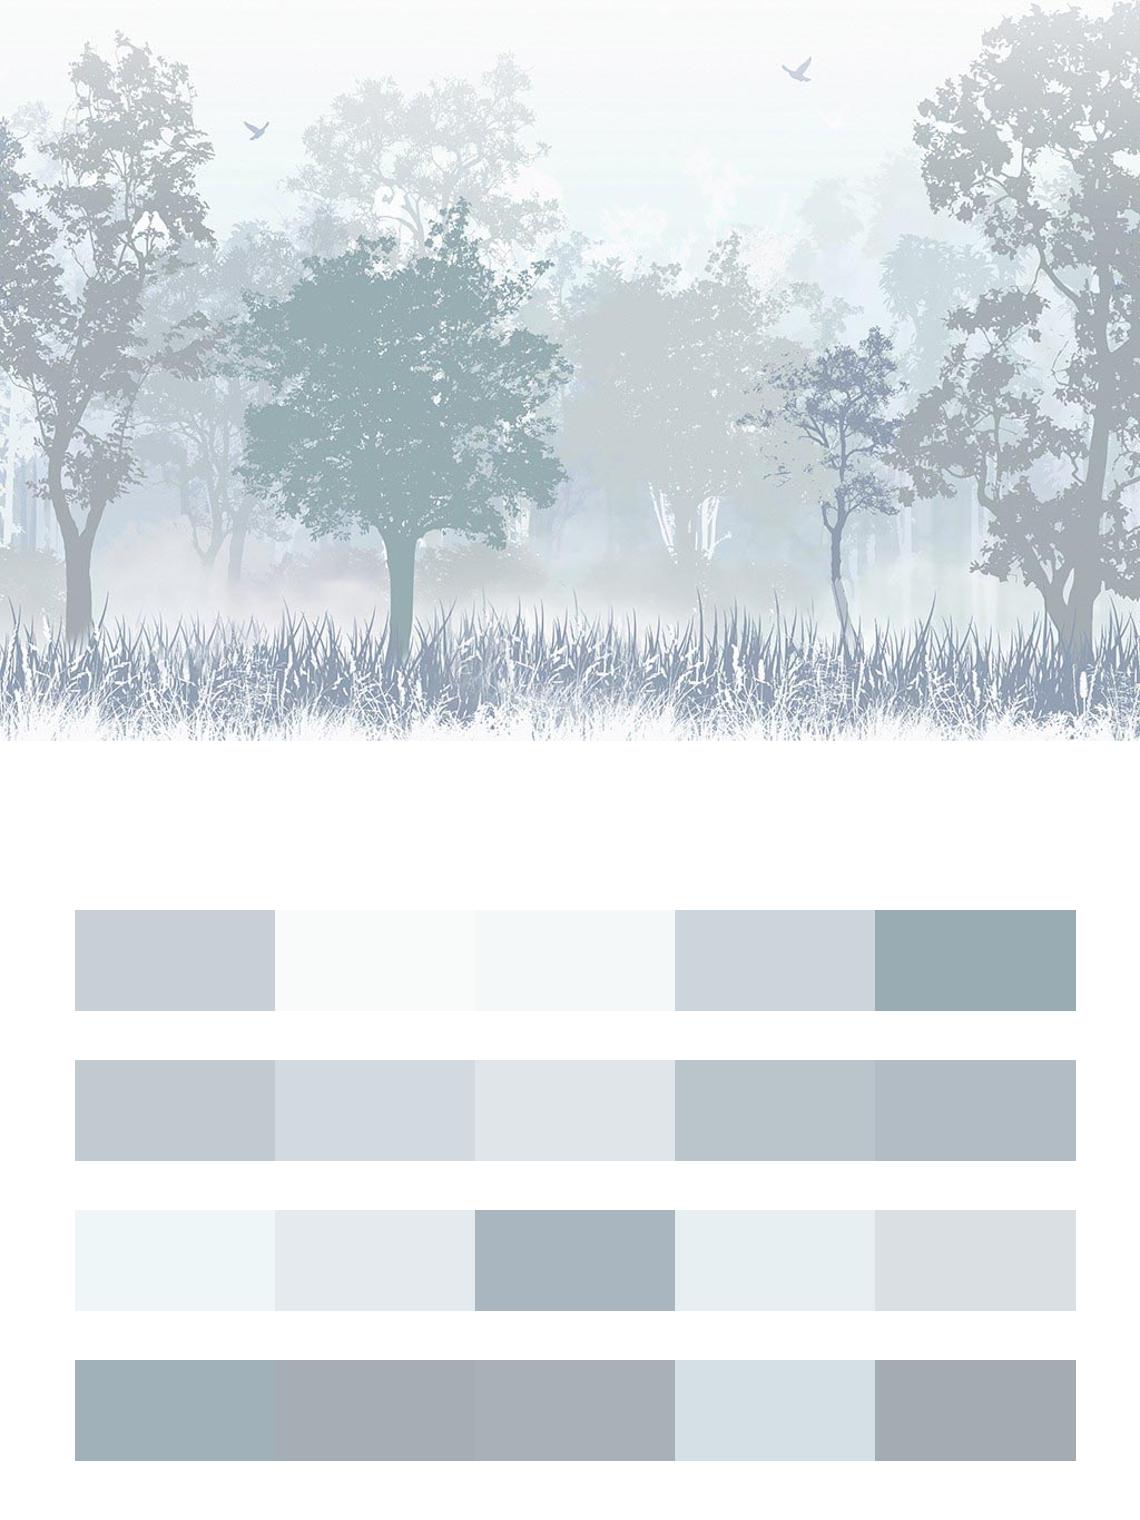 Нежный лес в тумане серо-голубой цвета